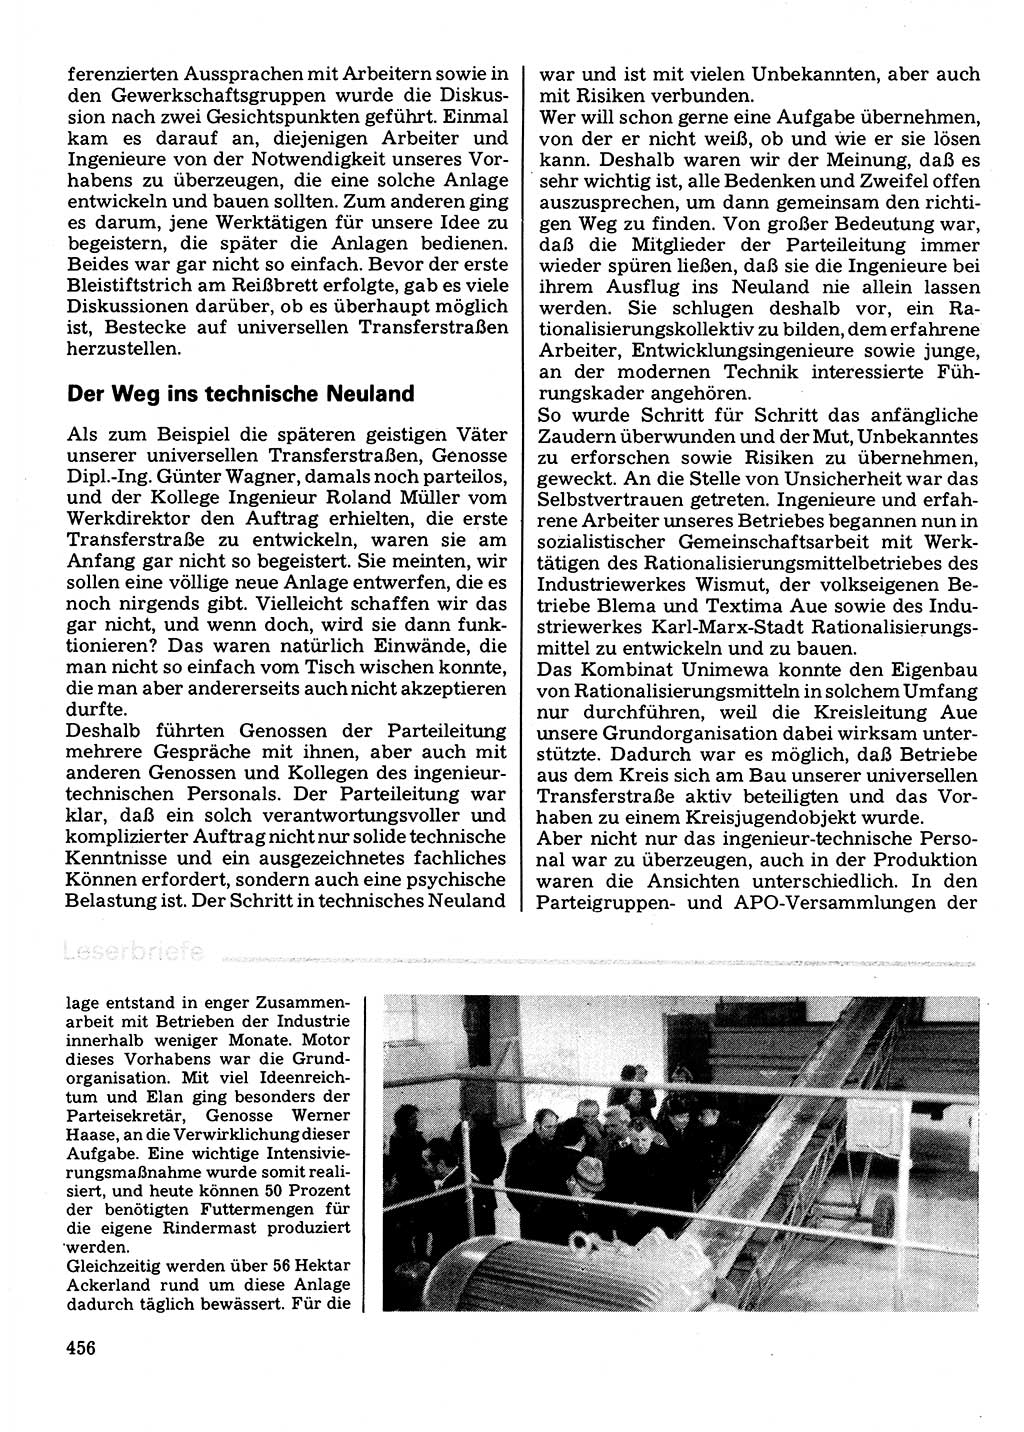 Neuer Weg (NW), Organ des Zentralkomitees (ZK) der SED (Sozialistische Einheitspartei Deutschlands) für Fragen des Parteilebens, 32. Jahrgang [Deutsche Demokratische Republik (DDR)] 1977, Seite 456 (NW ZK SED DDR 1977, S. 456)